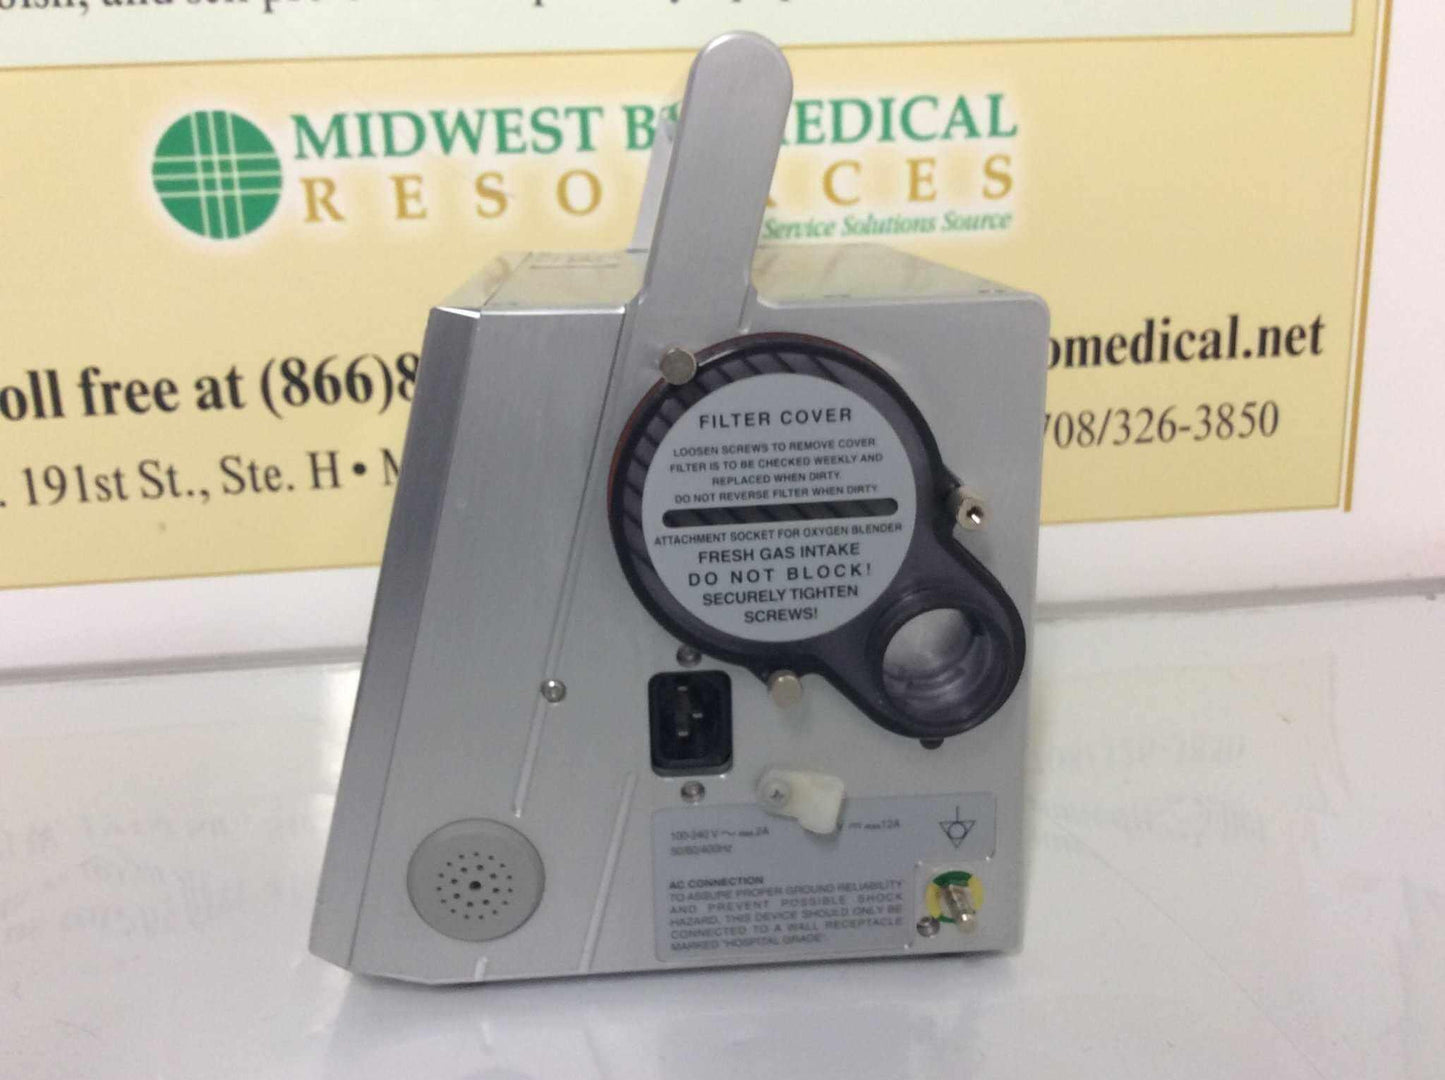 REFURBISHED Newport Medical Instruments HT50 Medical Ventilator HT50-H1 Warranty FREE Shipping - MBR Medicals